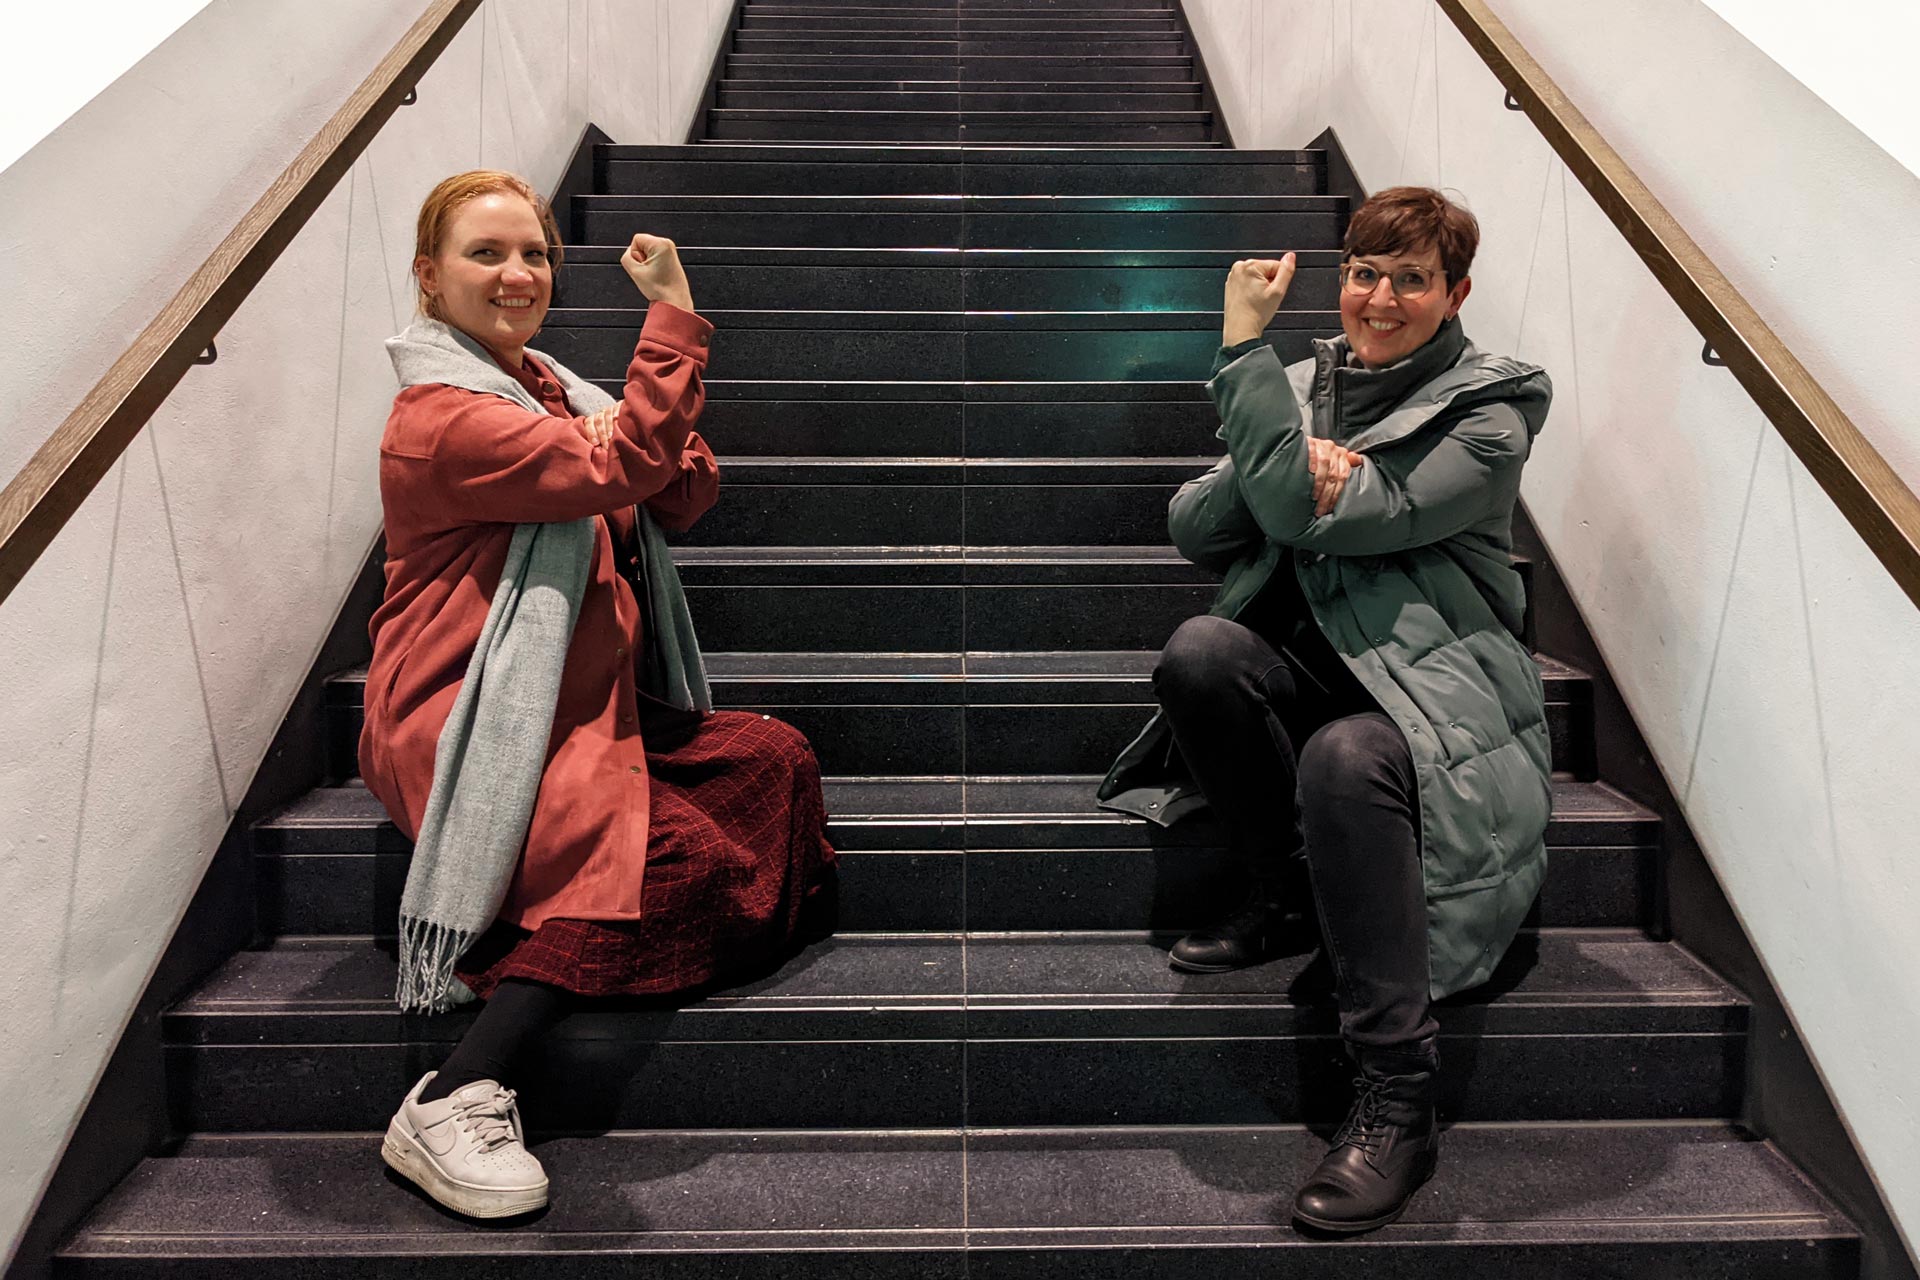 Elisa Senz und Sandra Cartes sitzen auf Treppenstufen und ballen ihre Hand zur Faust.